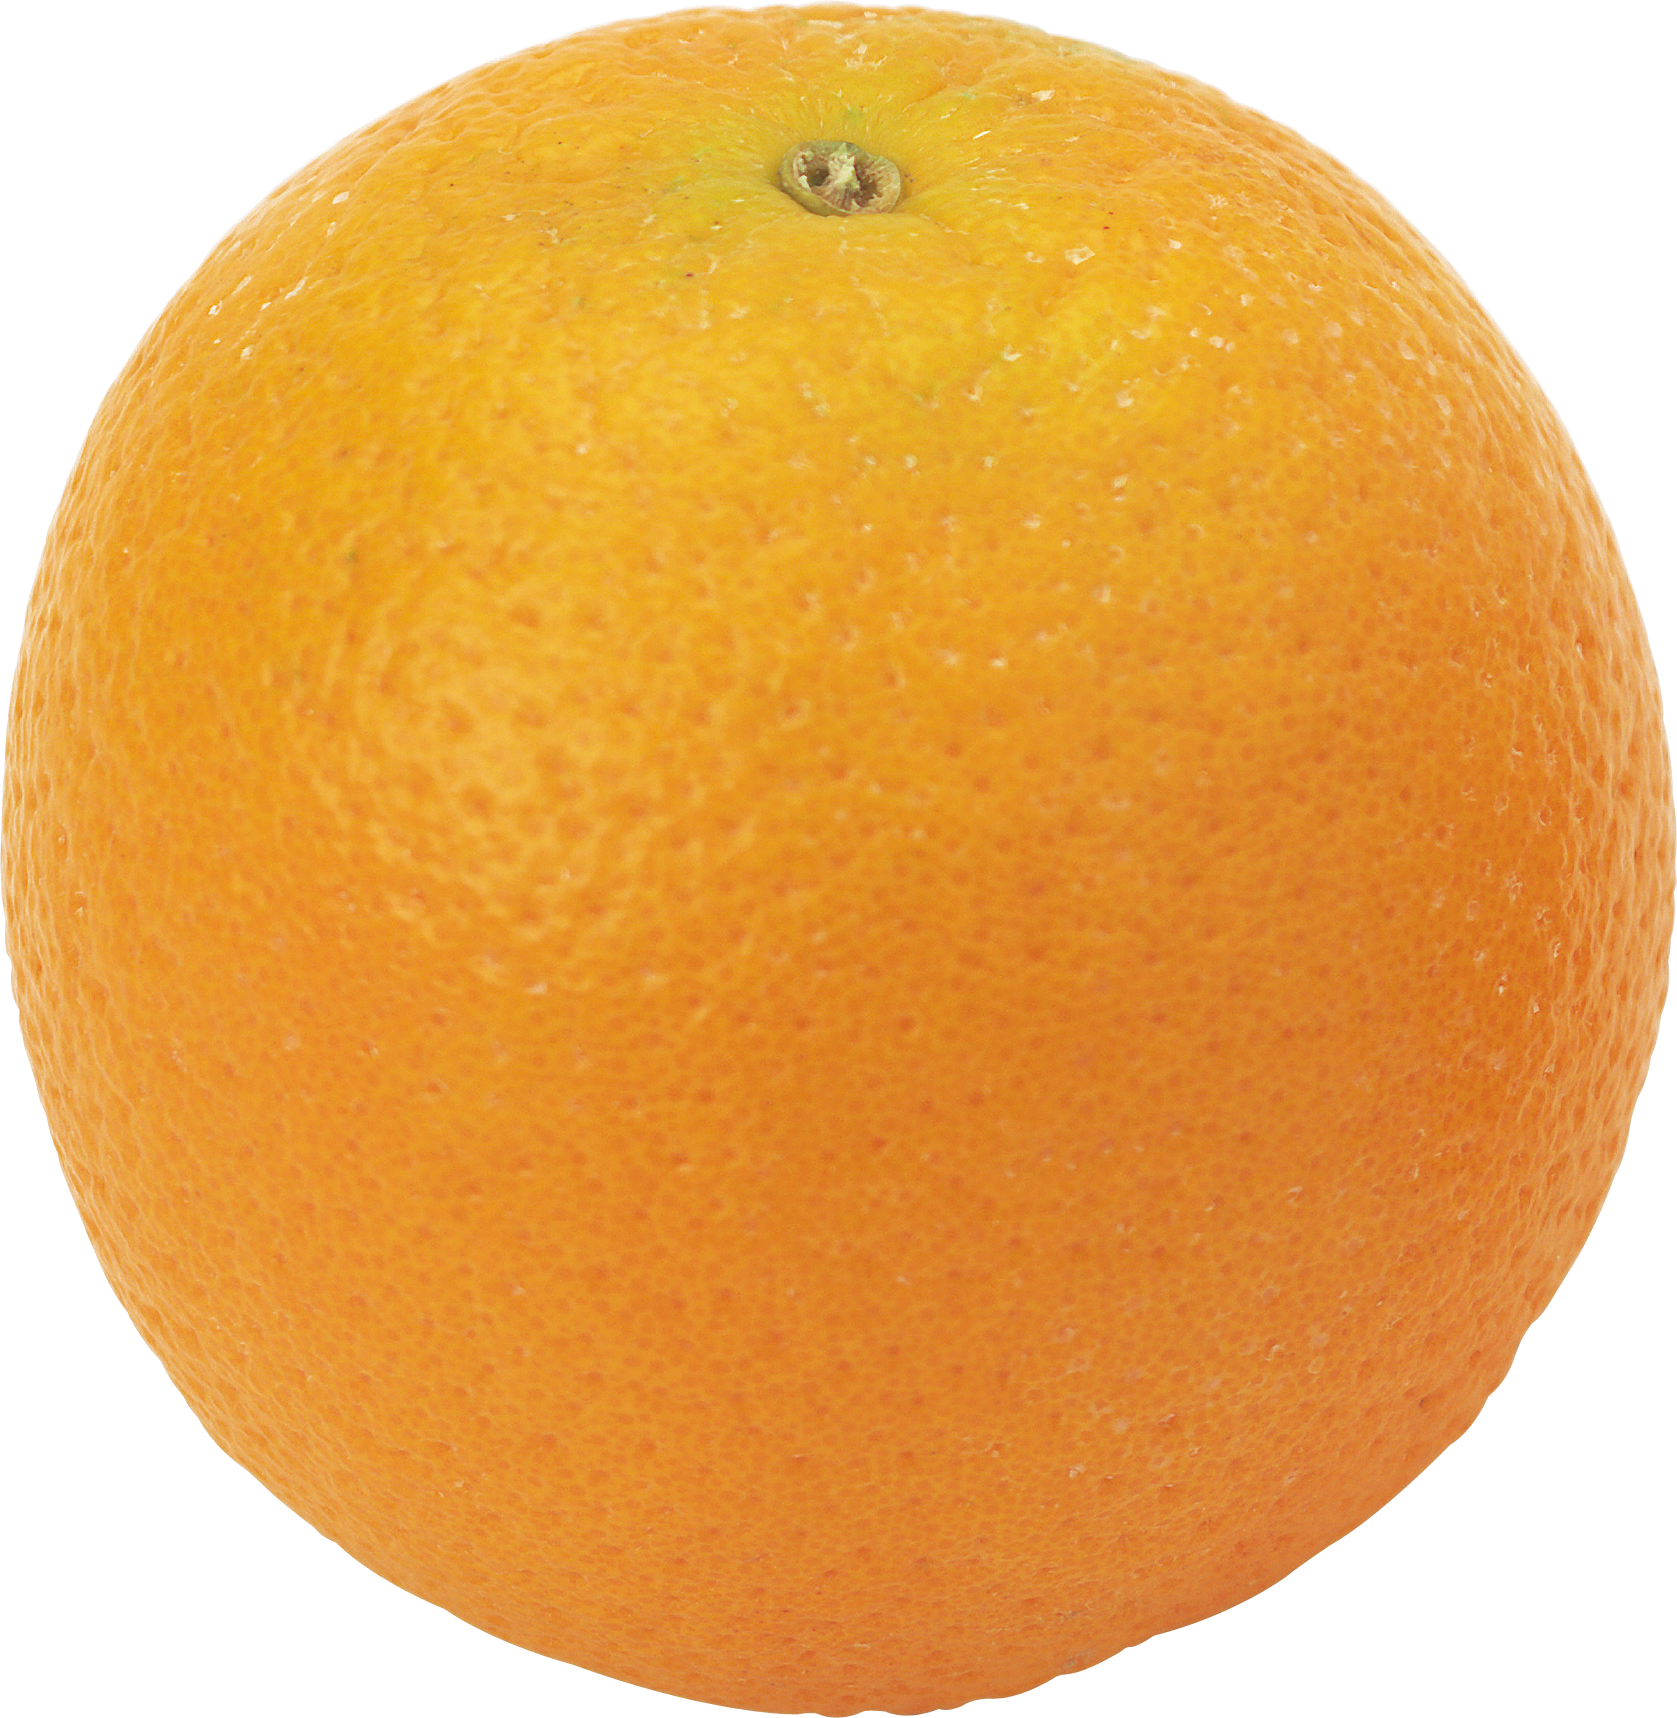 Orange PNG image, free download